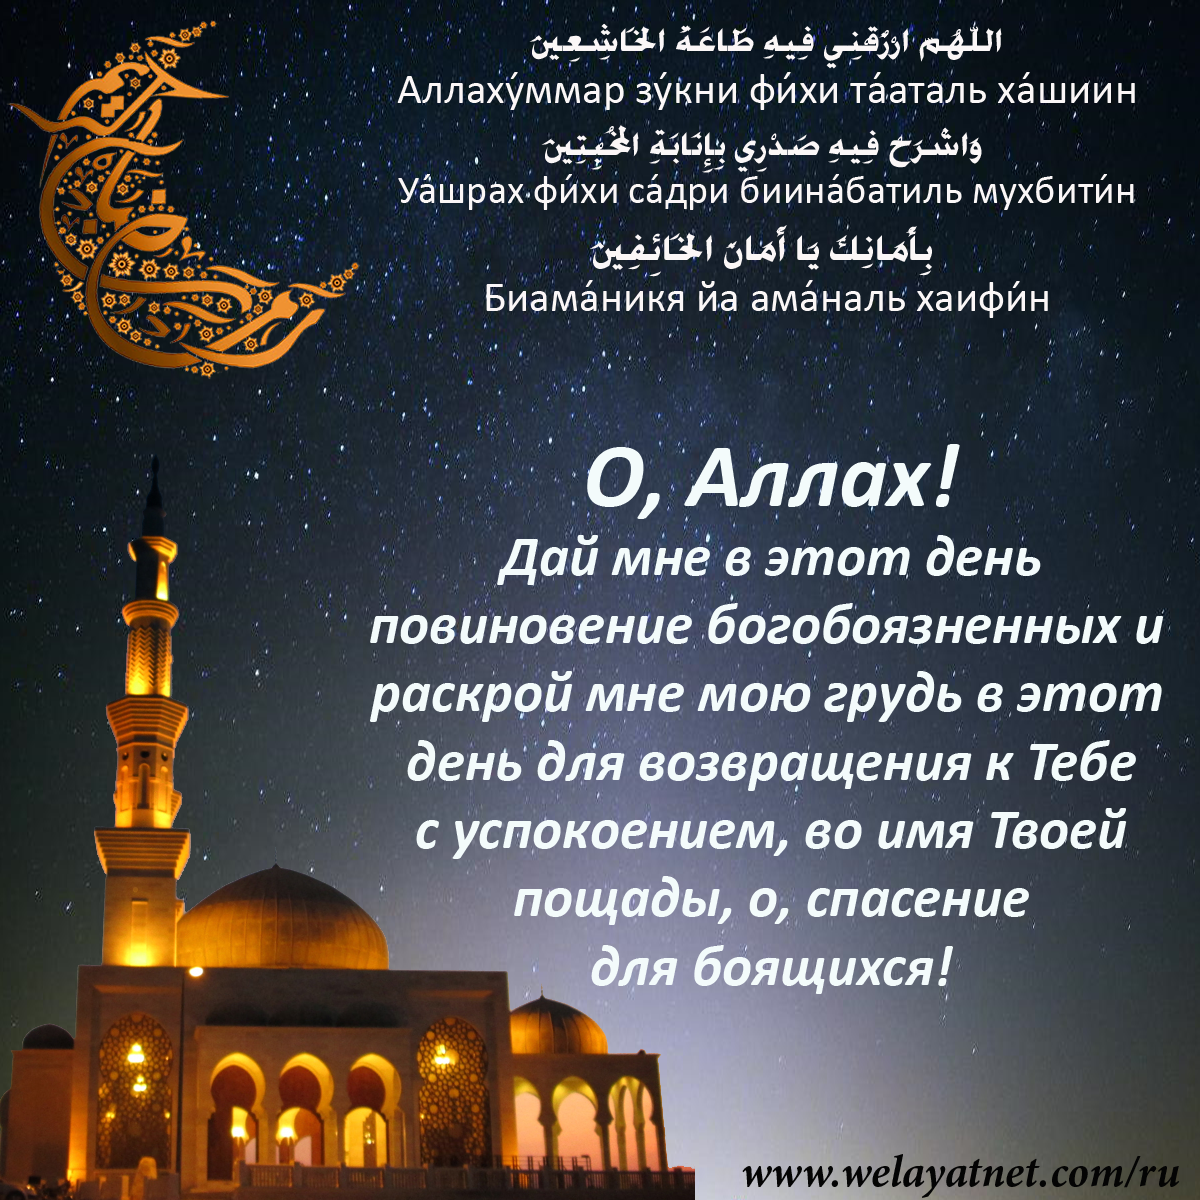 Фатва. Поздравление немусульман с их праздниками | security58.ru